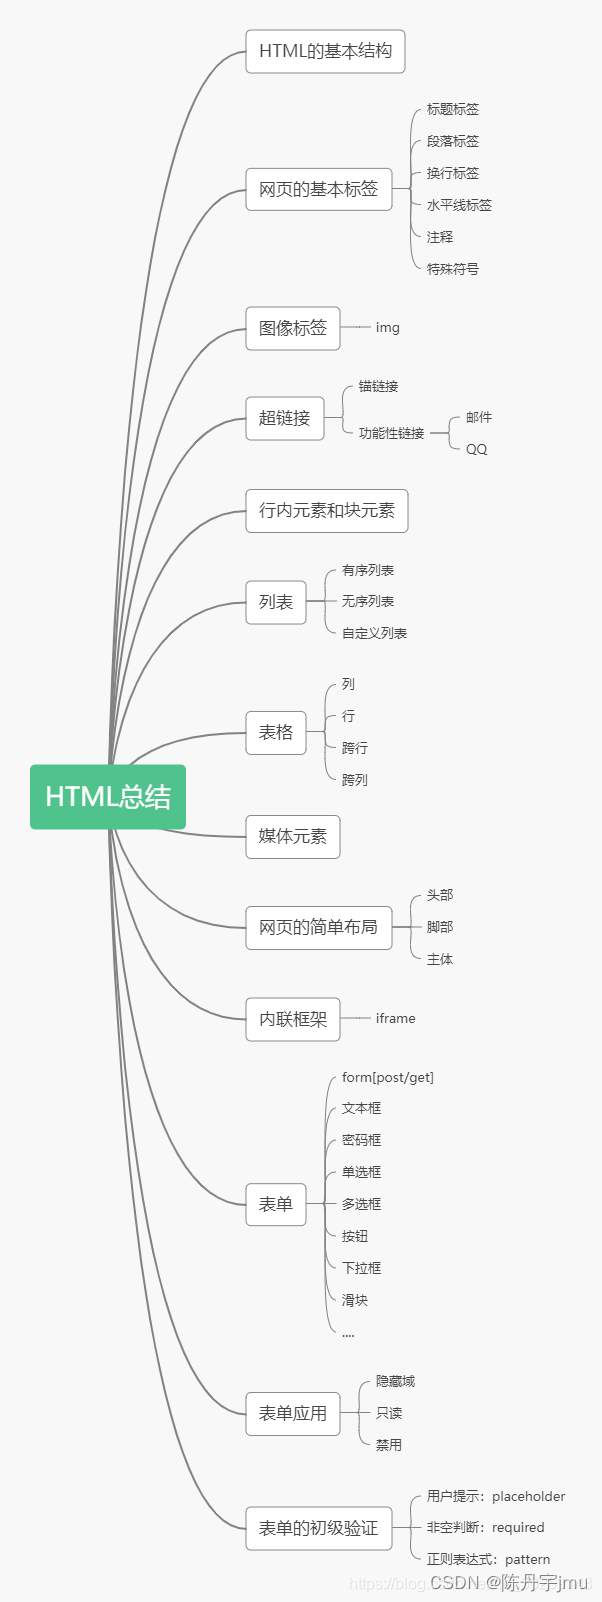 HTML5 + CSS3 总结 - 知识框架 思维导图